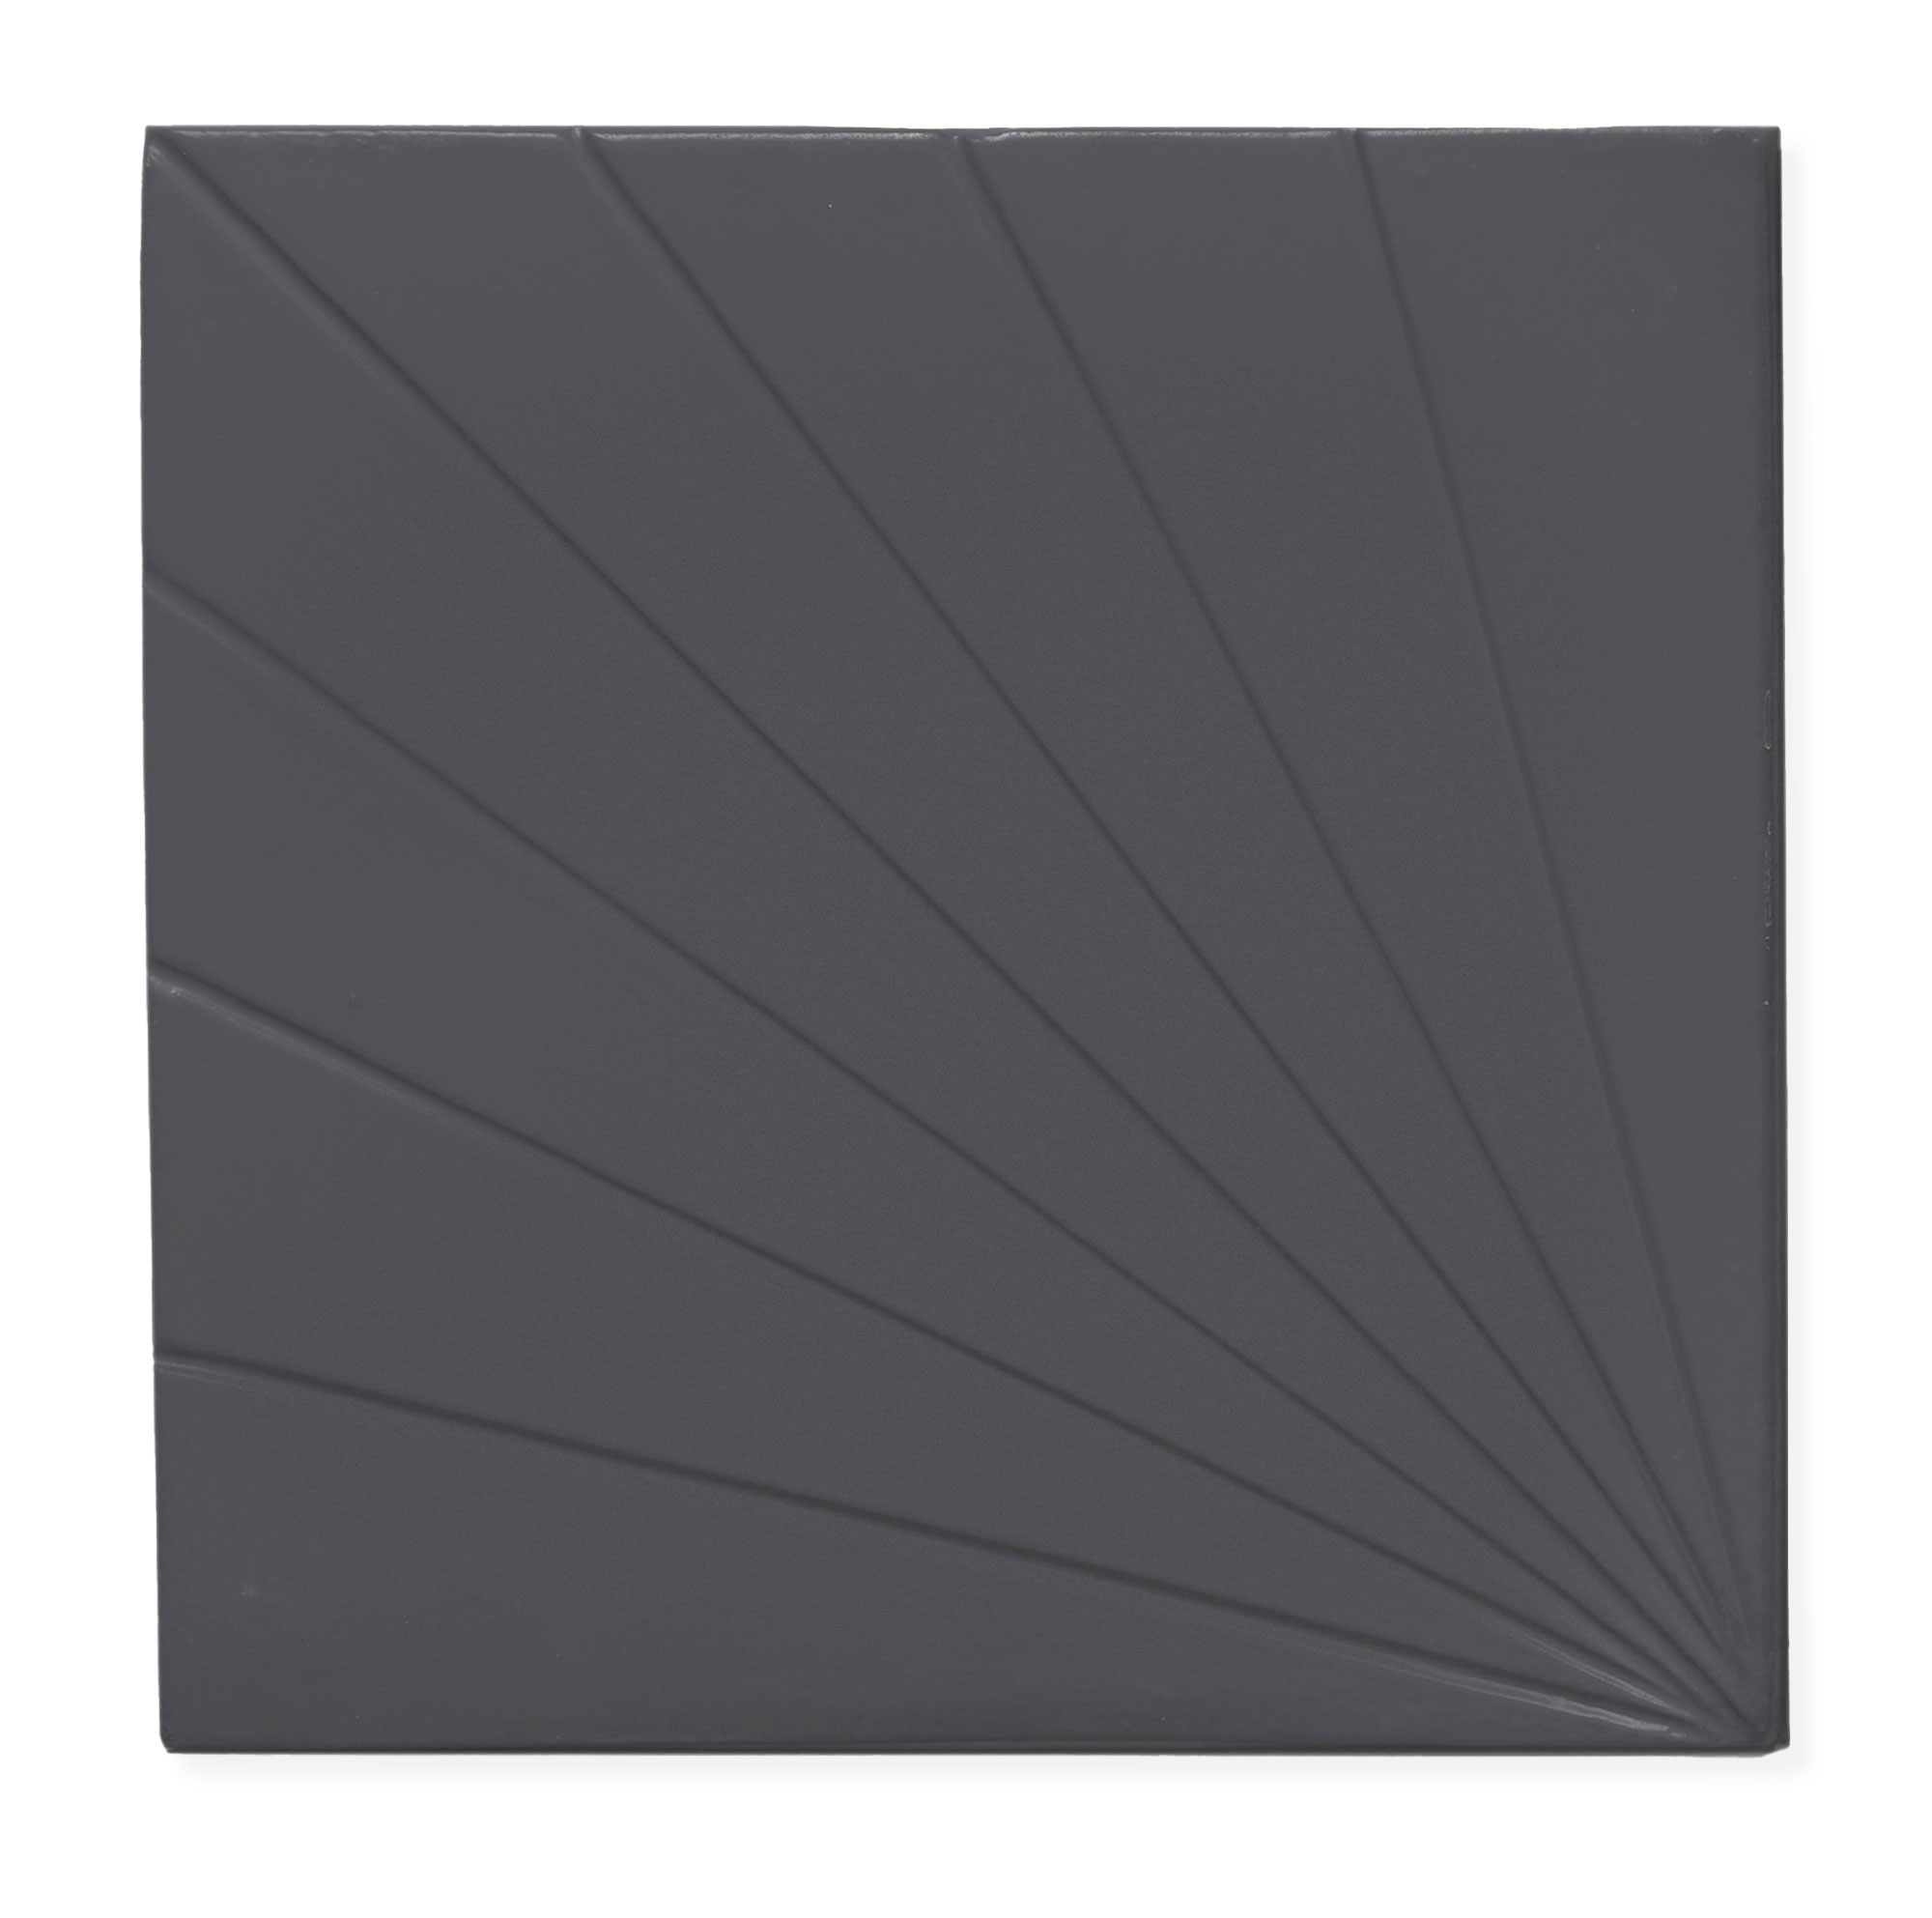 Sample: Tulum Black 6x6 - Dimensional Relief Artisan Ceramic Tile